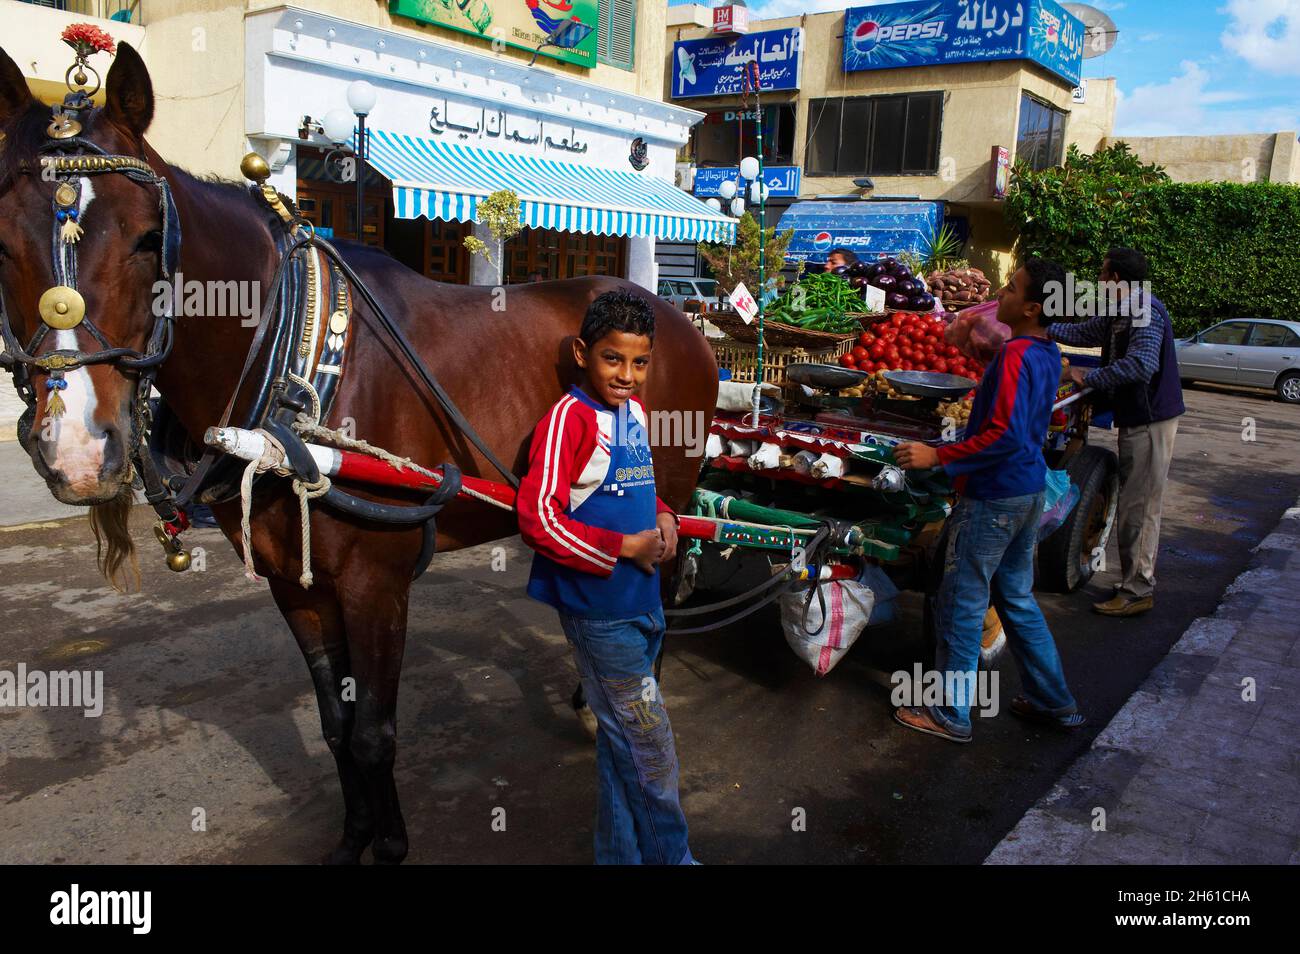 Egypte, la côte méditerranéenne, Alexandrie, marchand de legumes ambulant. // Egypt, Alexandria, itinerant vegetable market. Stock Photo